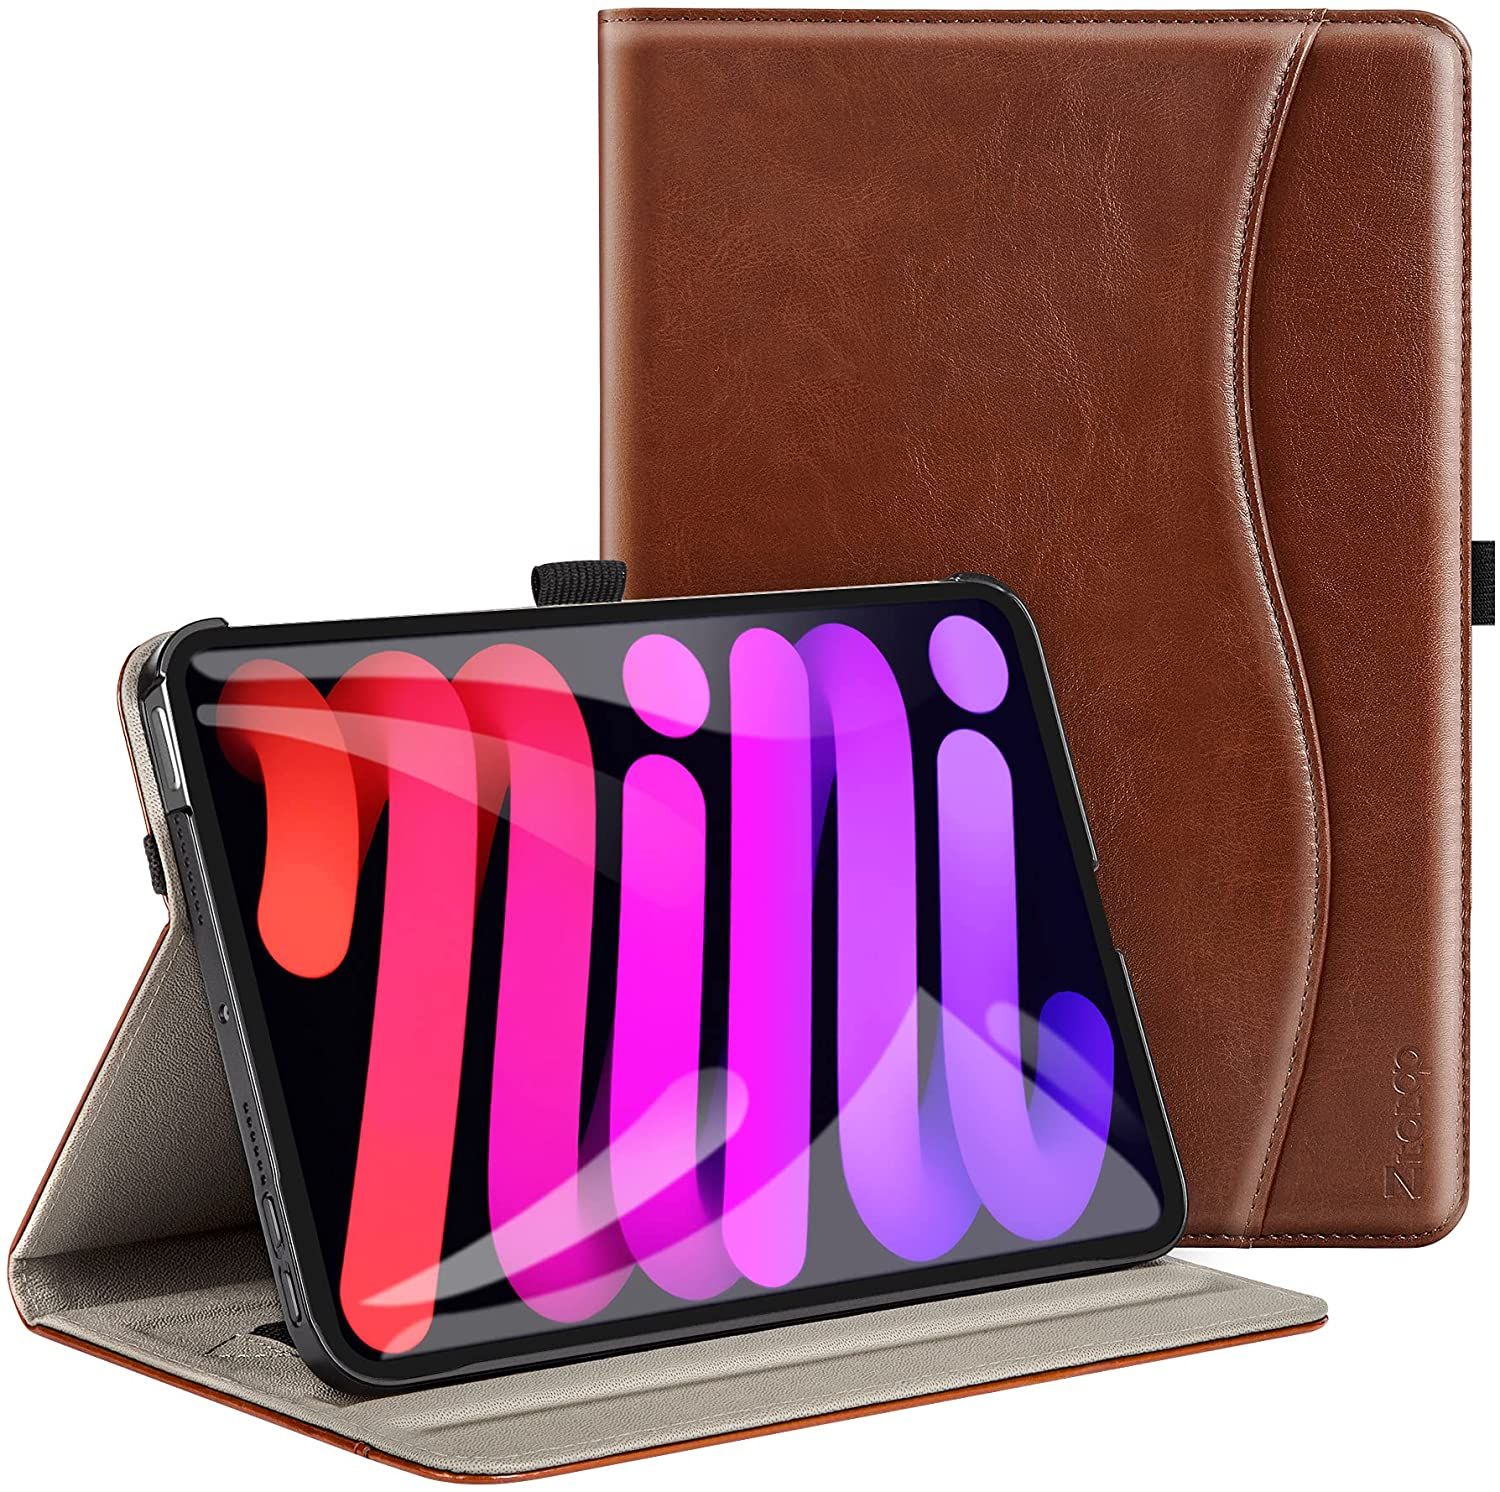 The 7 Best iPad Mini Cases